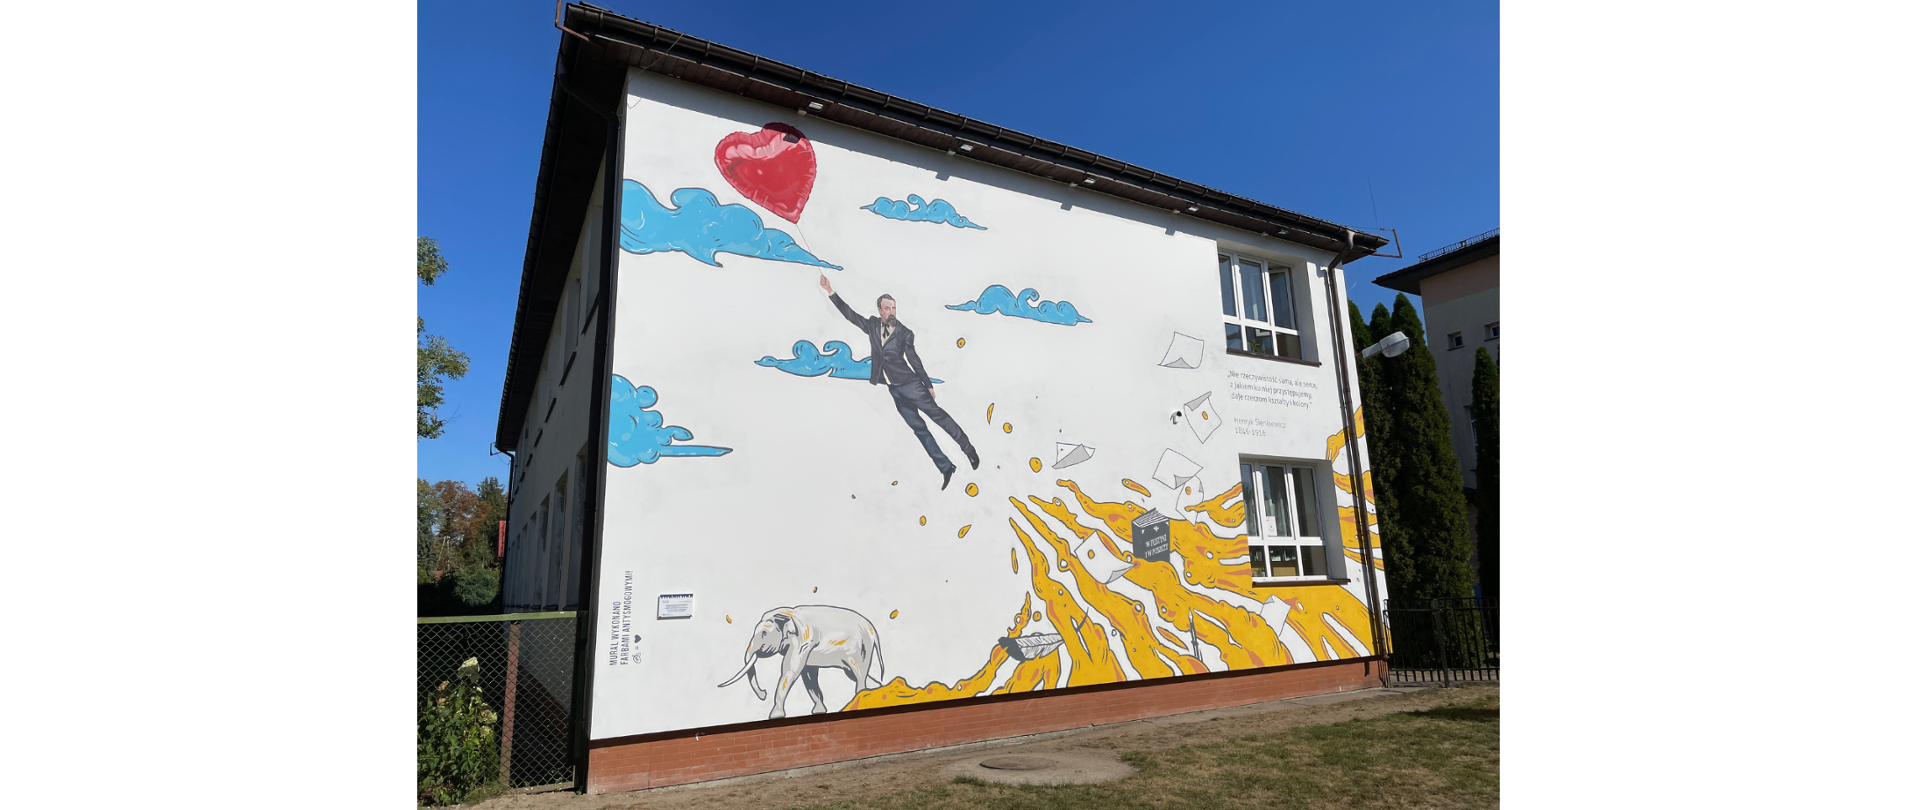 Budynek szkoły na którego ścianie namalowany został mural przedstawiający odlatującego Henryka Sienkiewicza, książki, chmury oraz słonia.